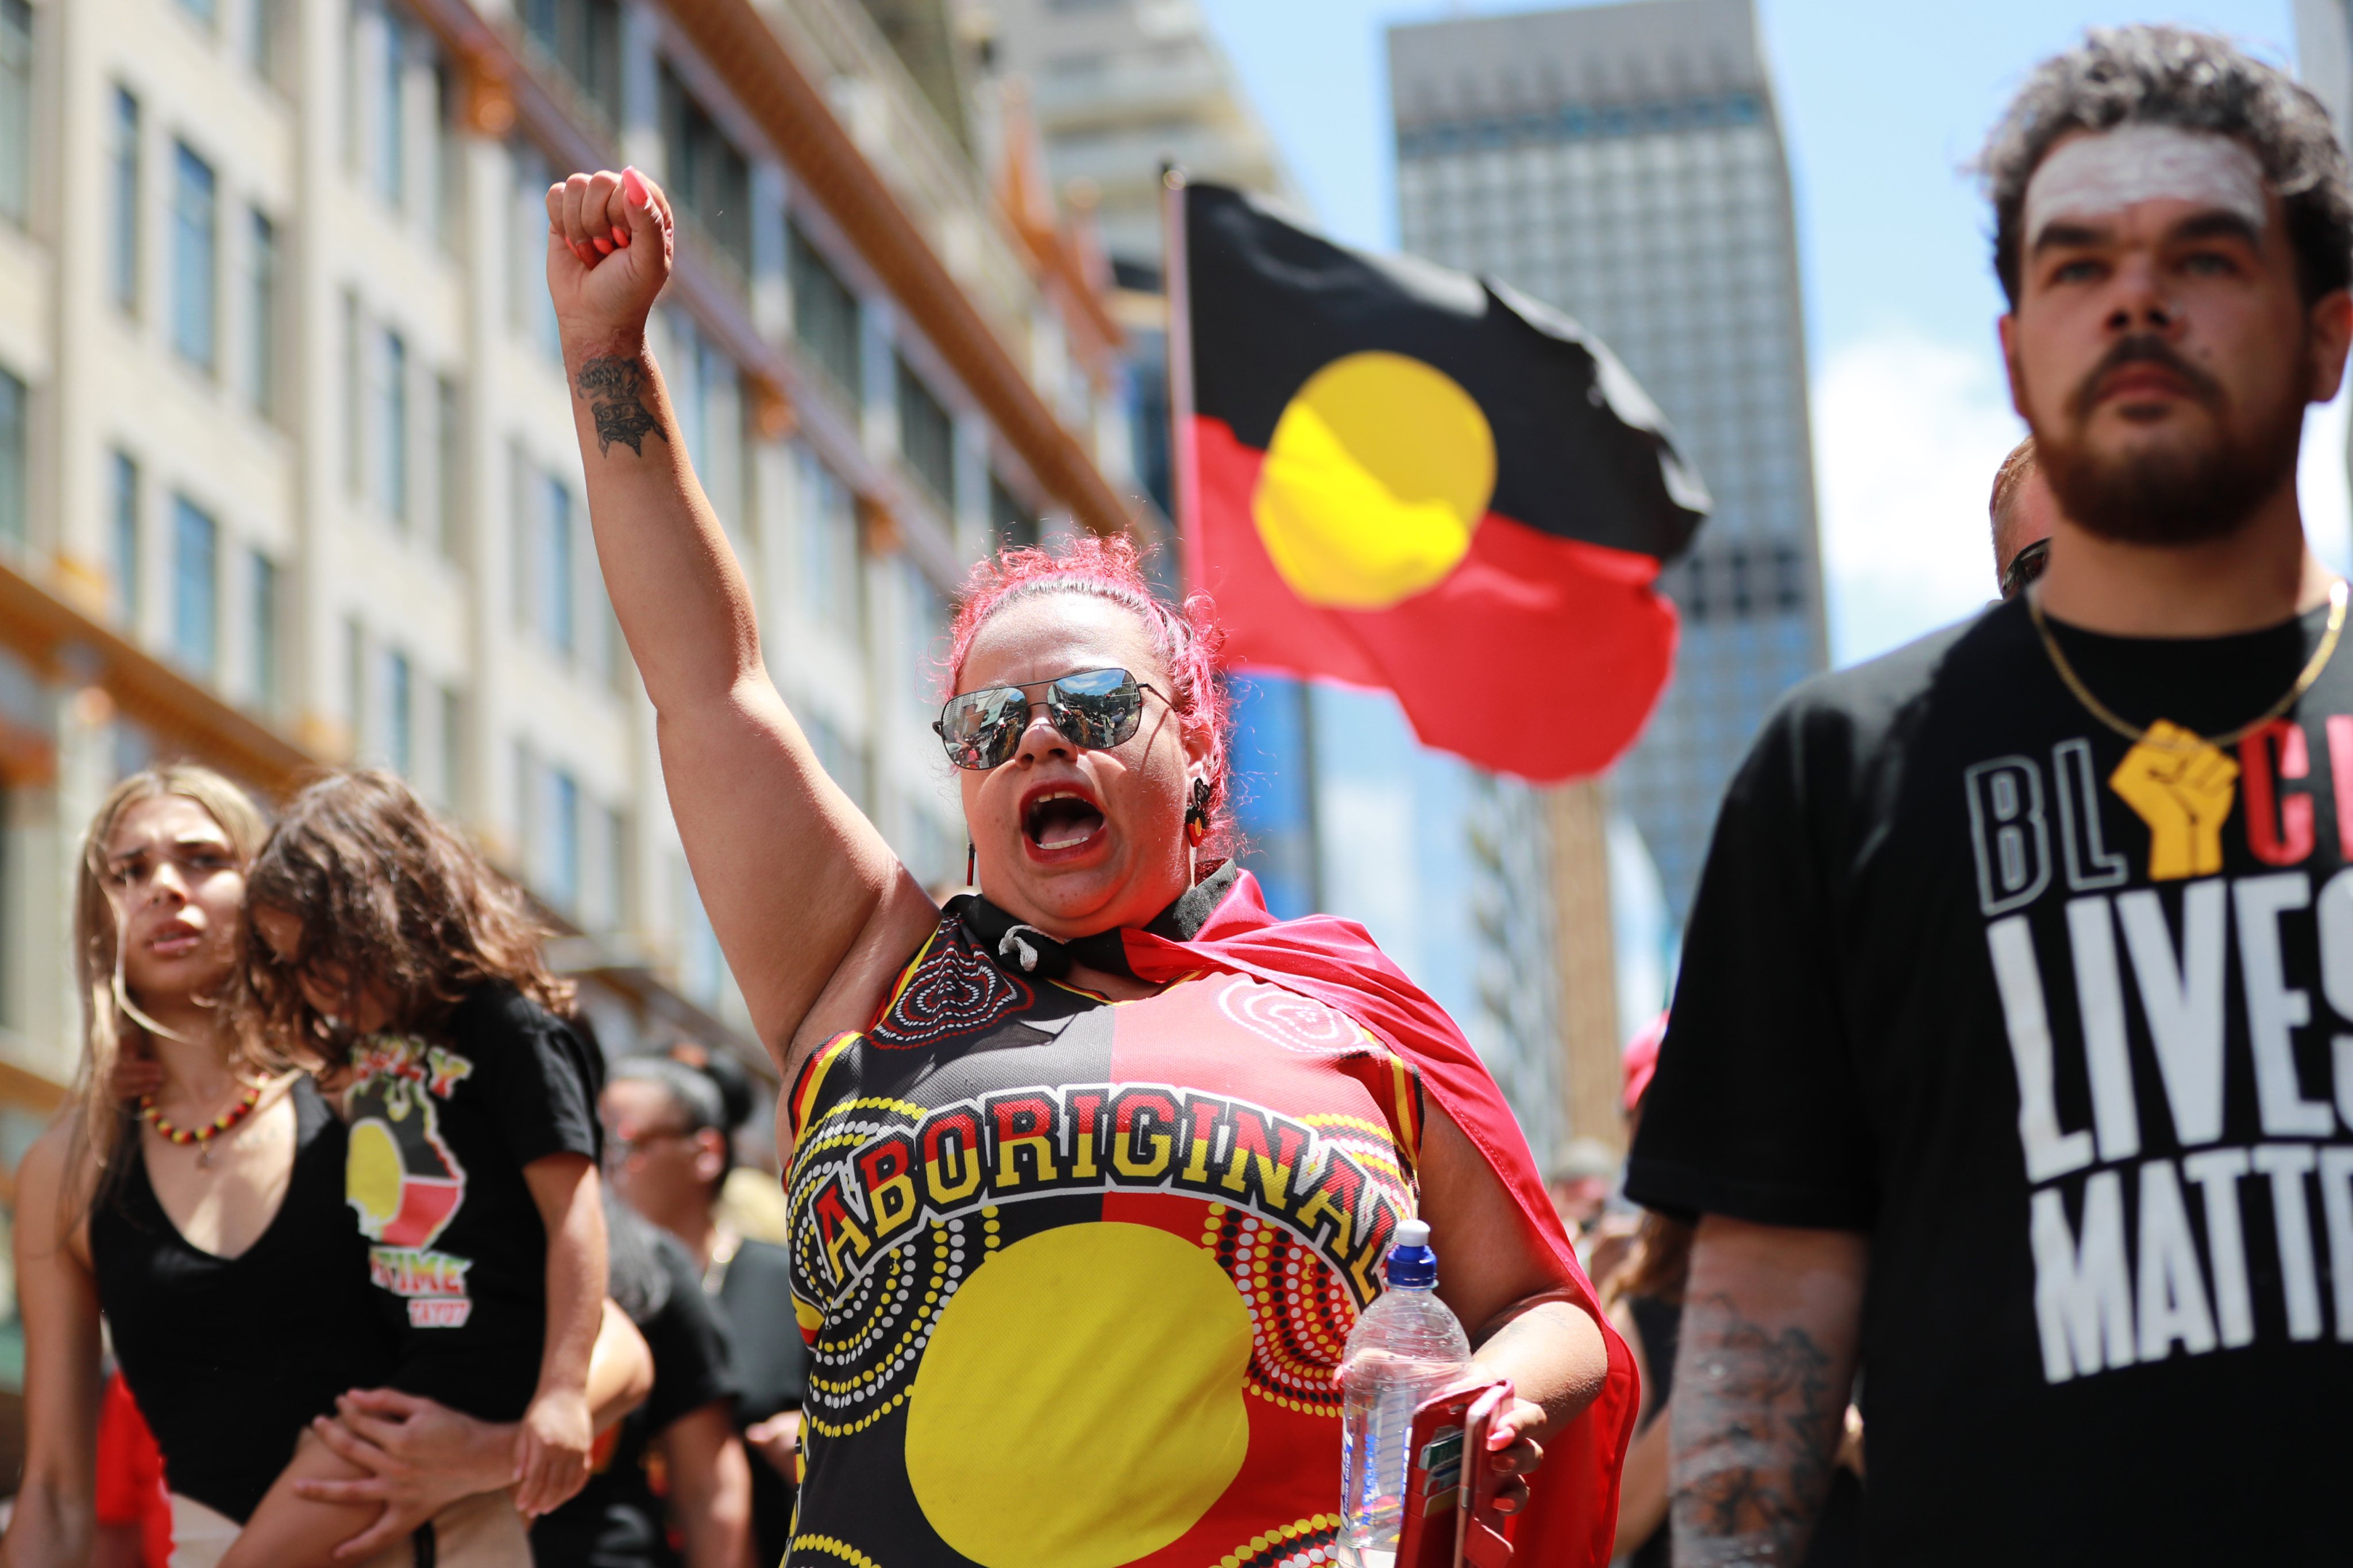 Protestos contra o Dia da Austrália a 26 de janeiro, apelidada pela população aborígene como Dia da Invasão, uma vez que marca a tomada da Austrália pelos britânicos em 1788